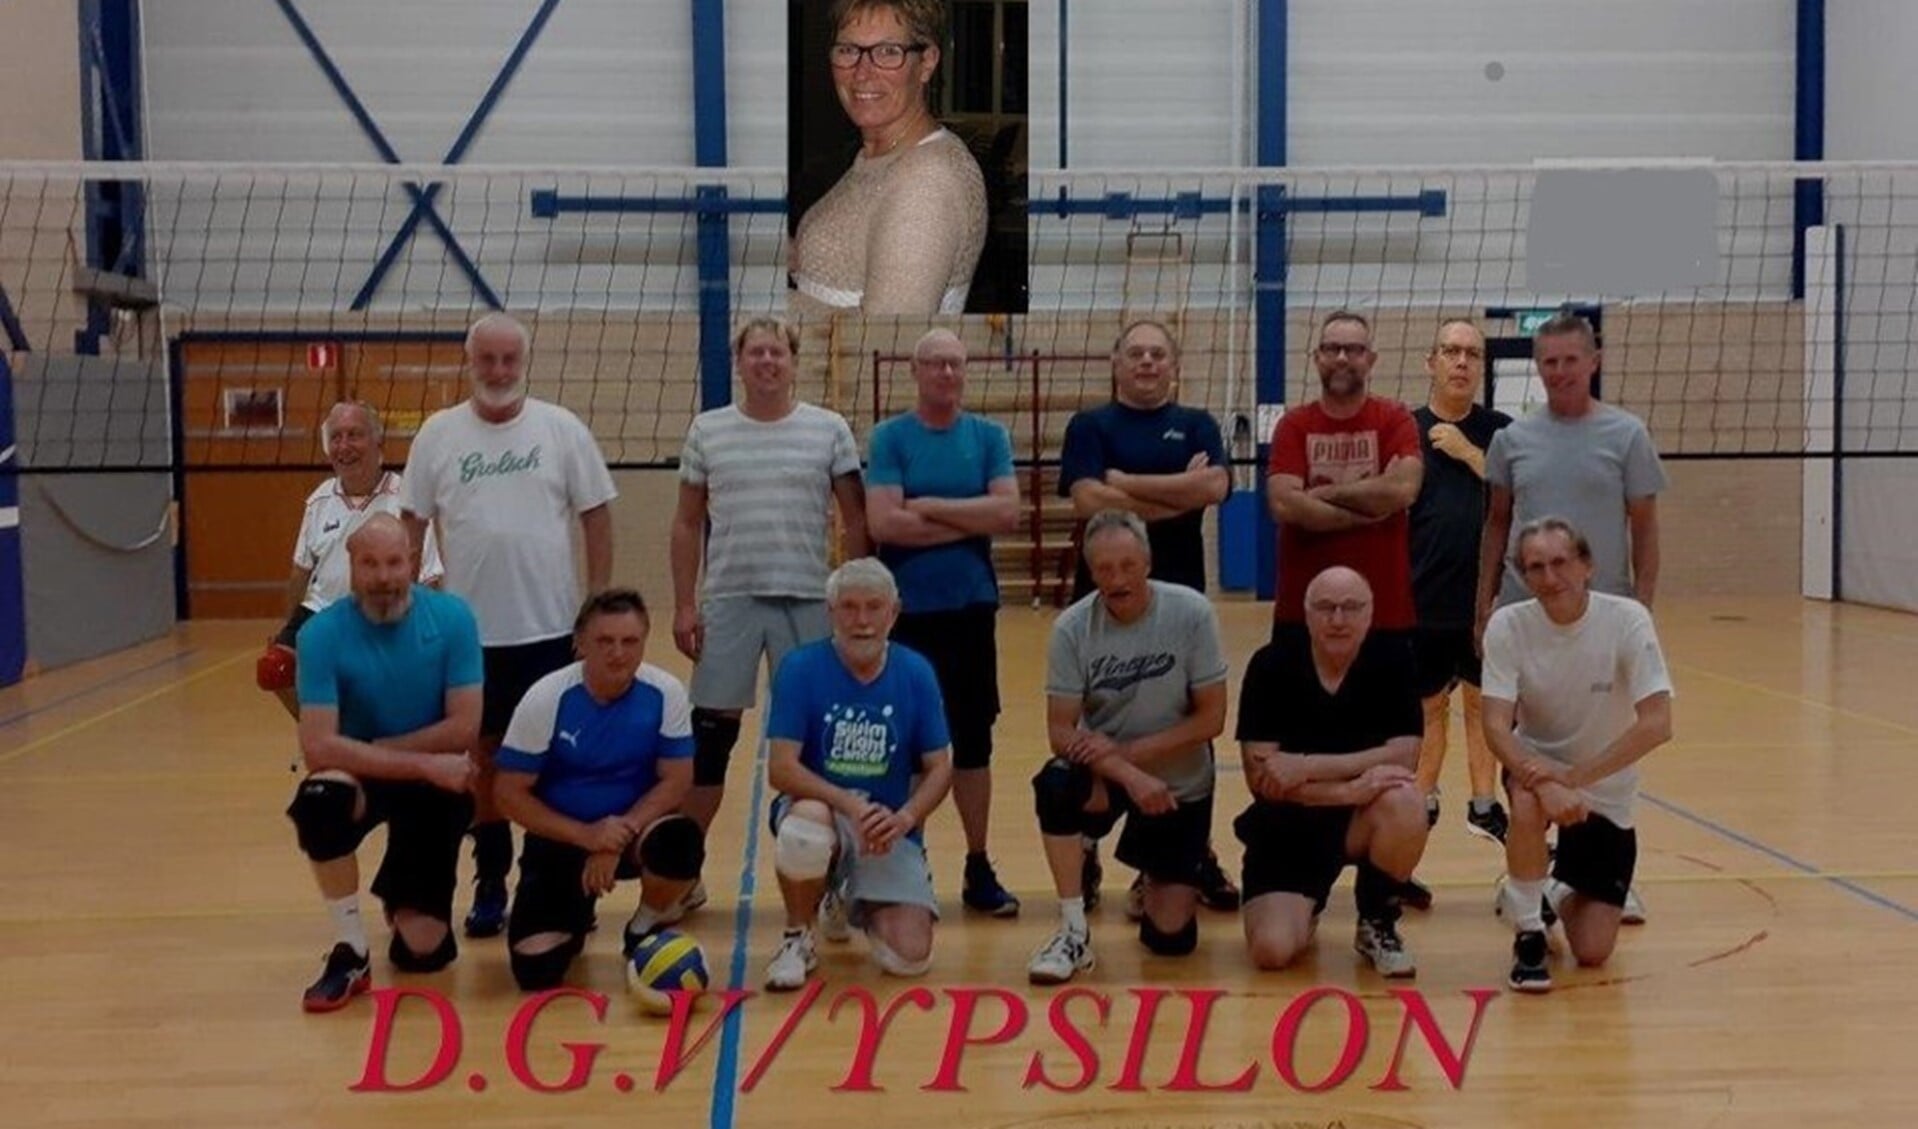 De volleybalheren van Ypsilon. Eigen foto